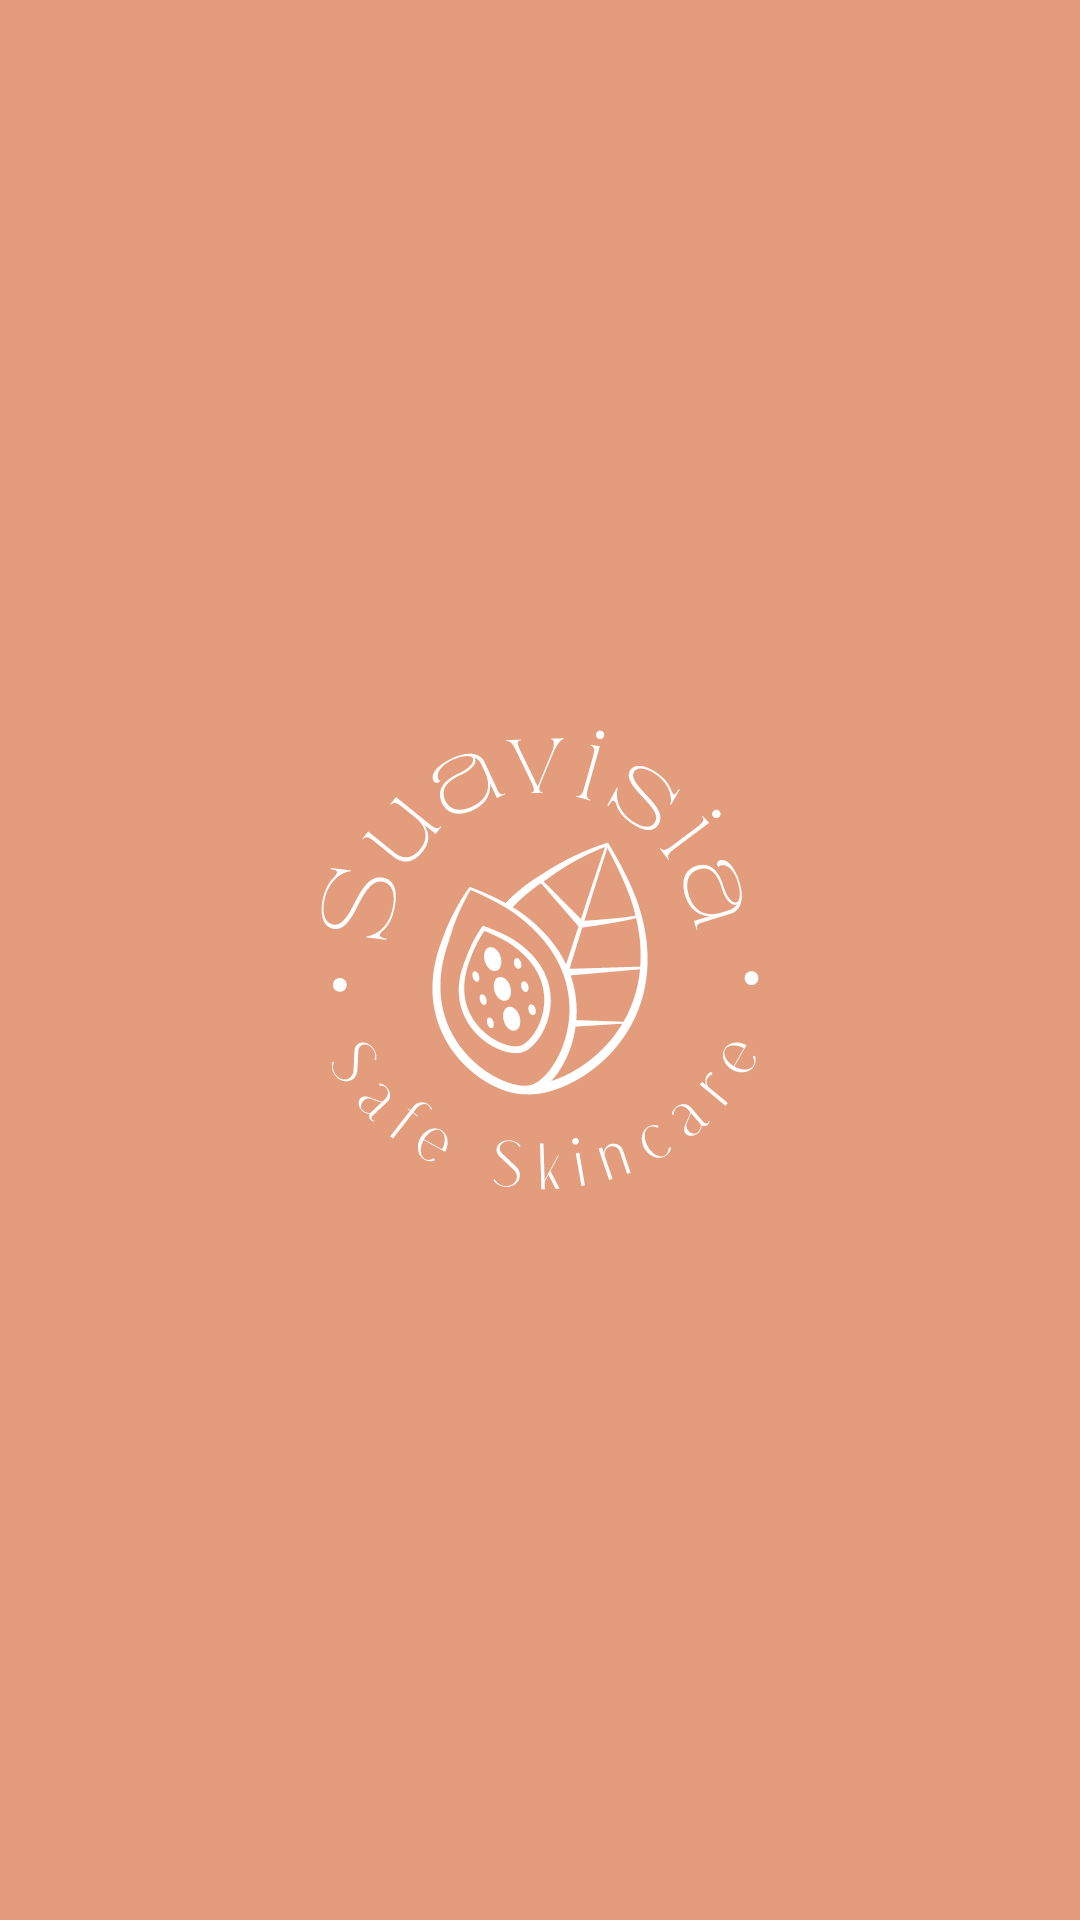 Création du logo de Suavisia, marque de cosmétique française